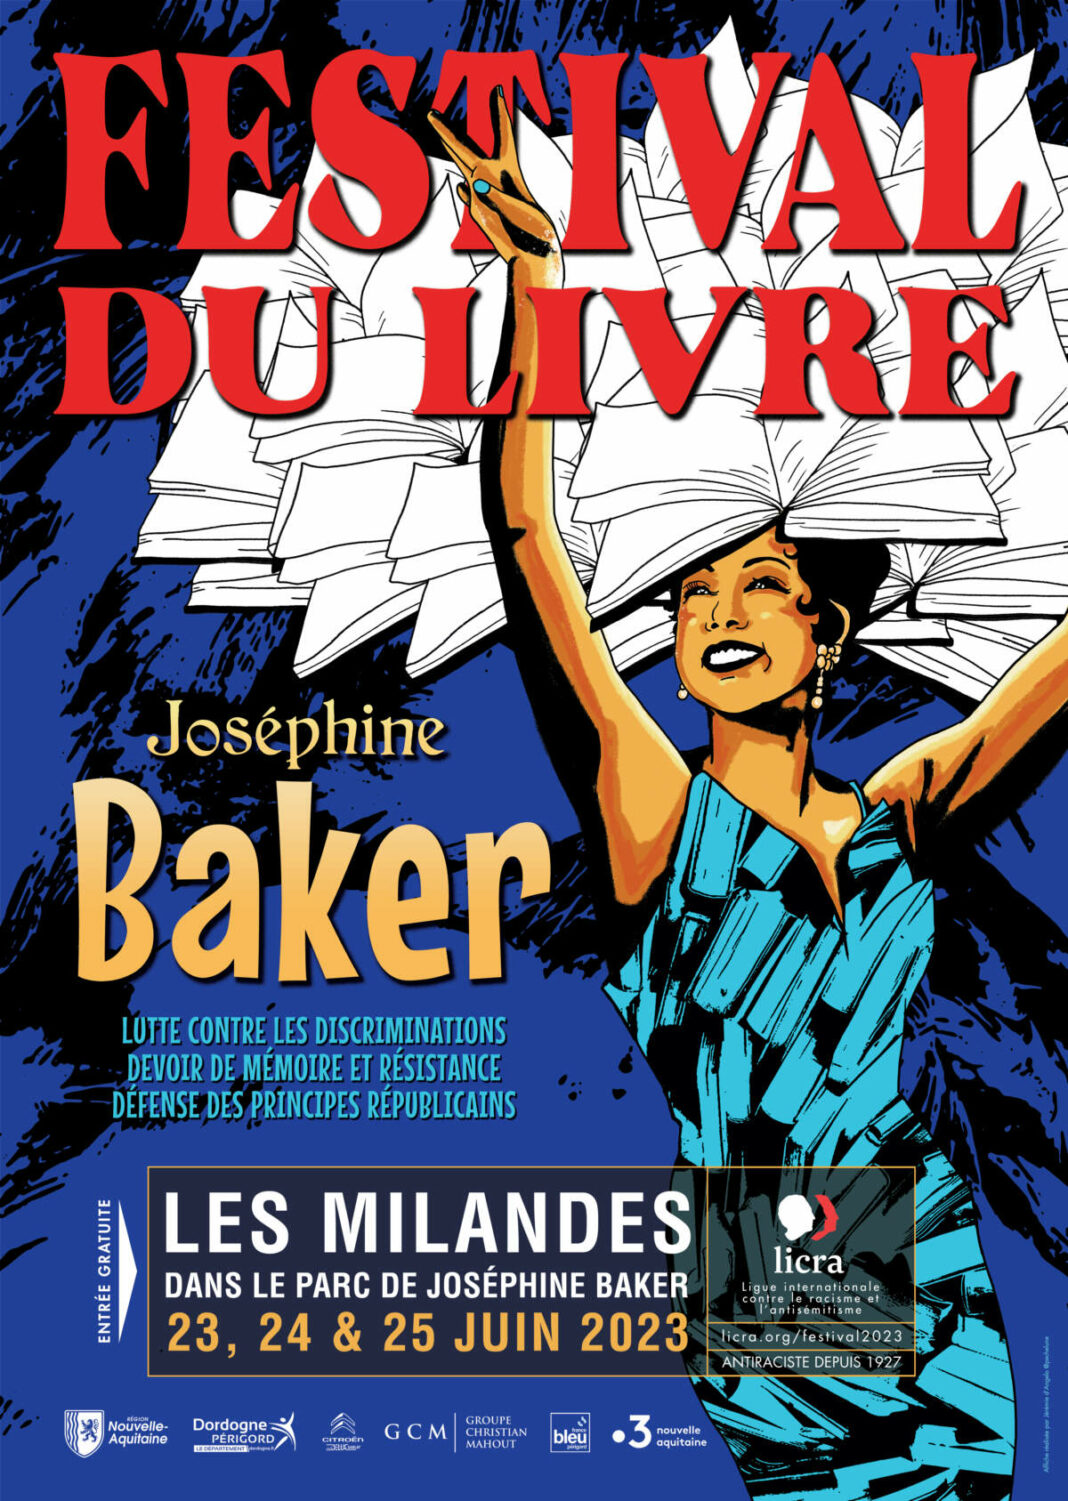 1er Festival du Livre Josephine Baker au Château des Milandes (Dordogne) 23-25 juin 2023